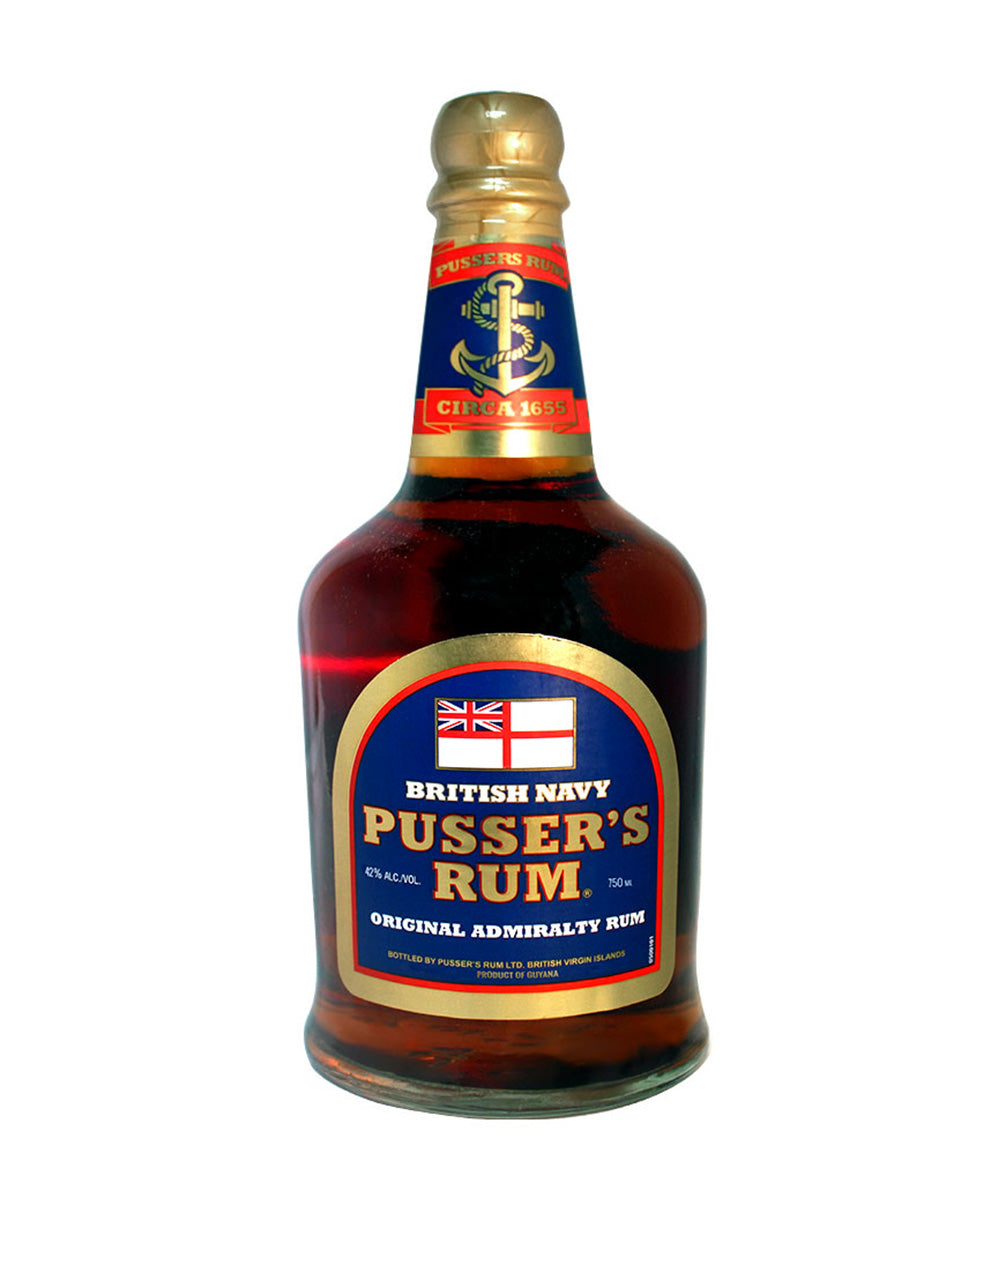 Royal Rum & Coke – Pusser's Rum